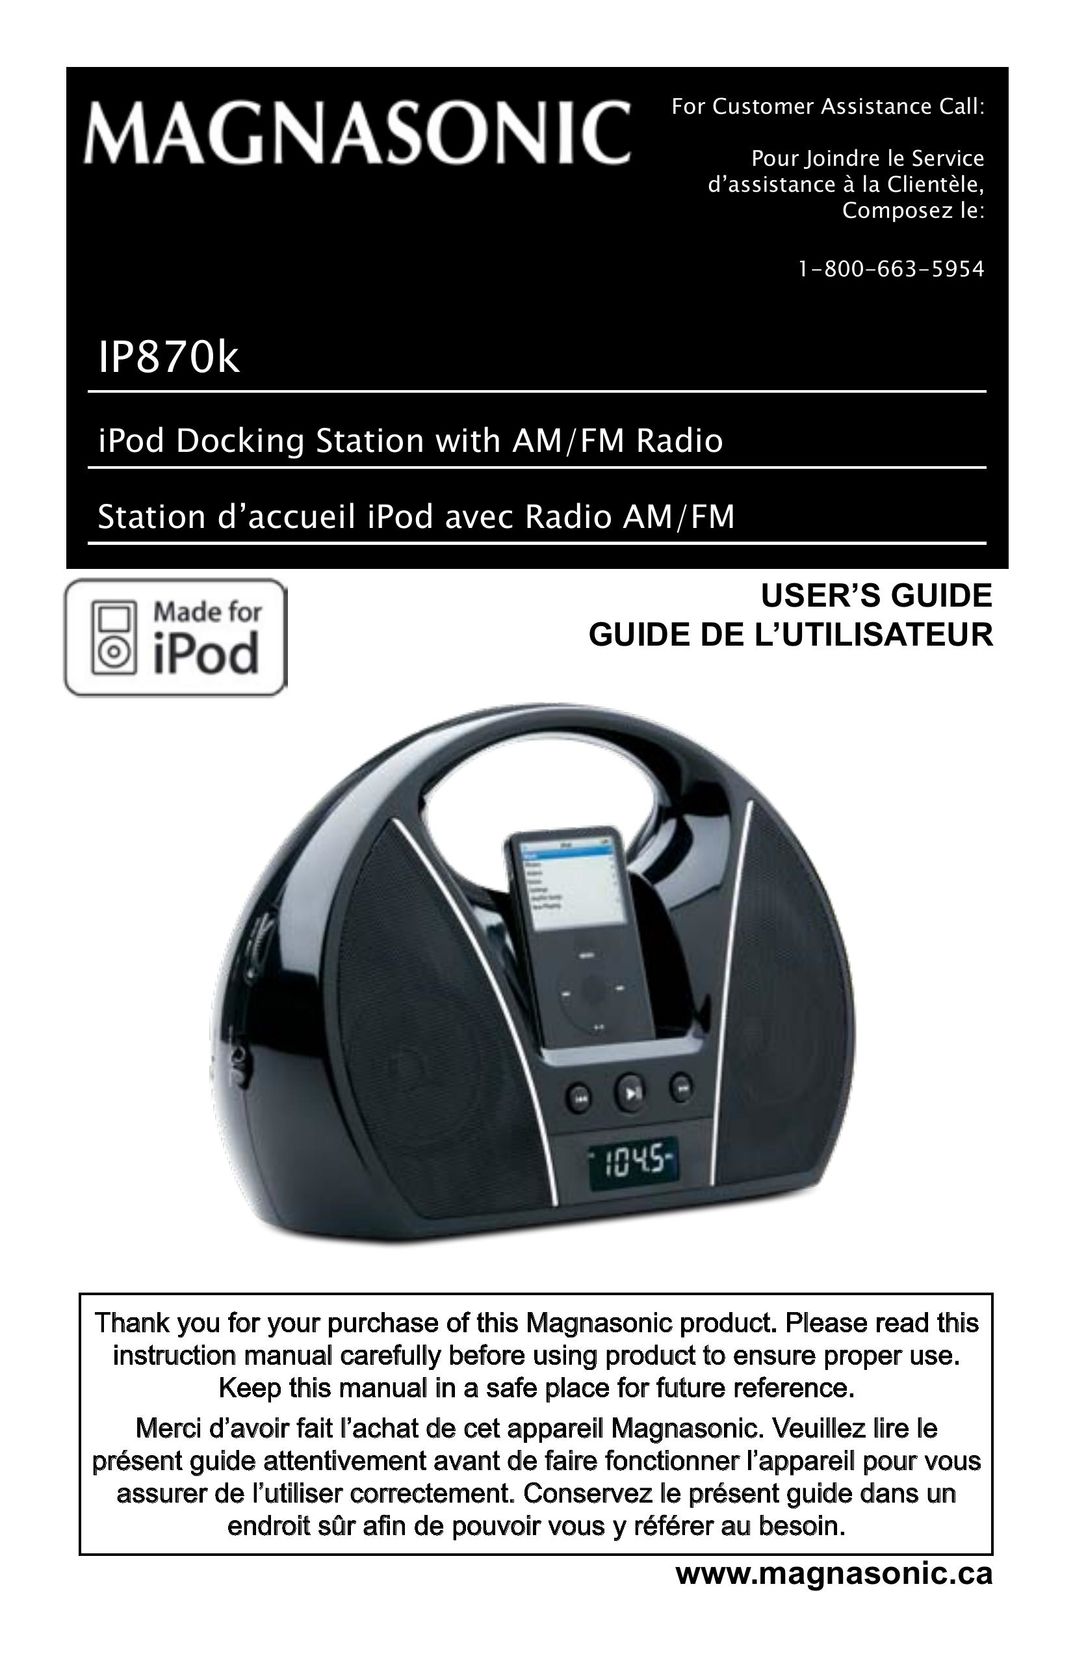 Magnasonic IP870k MP3 Docking Station User Manual